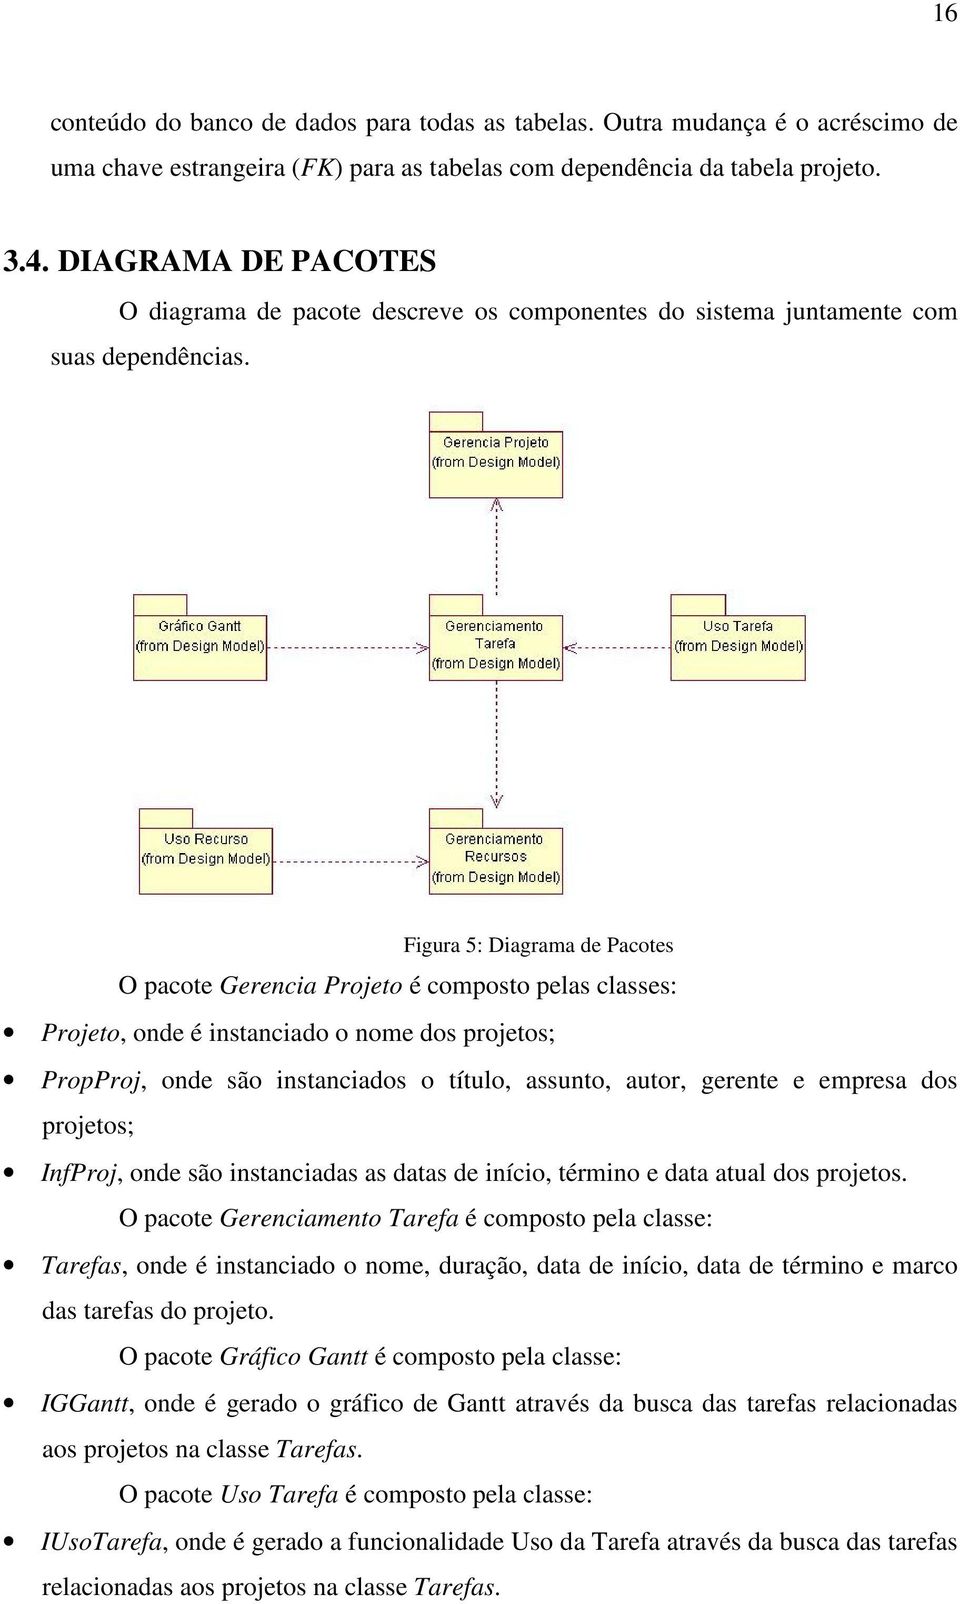 Figura 5: Diagrama de Pacotes O pacote Gerencia Projeto é composto pelas classes: Projeto, onde é instanciado o nome dos projetos; PropProj, onde são instanciados o título, assunto, autor, gerente e